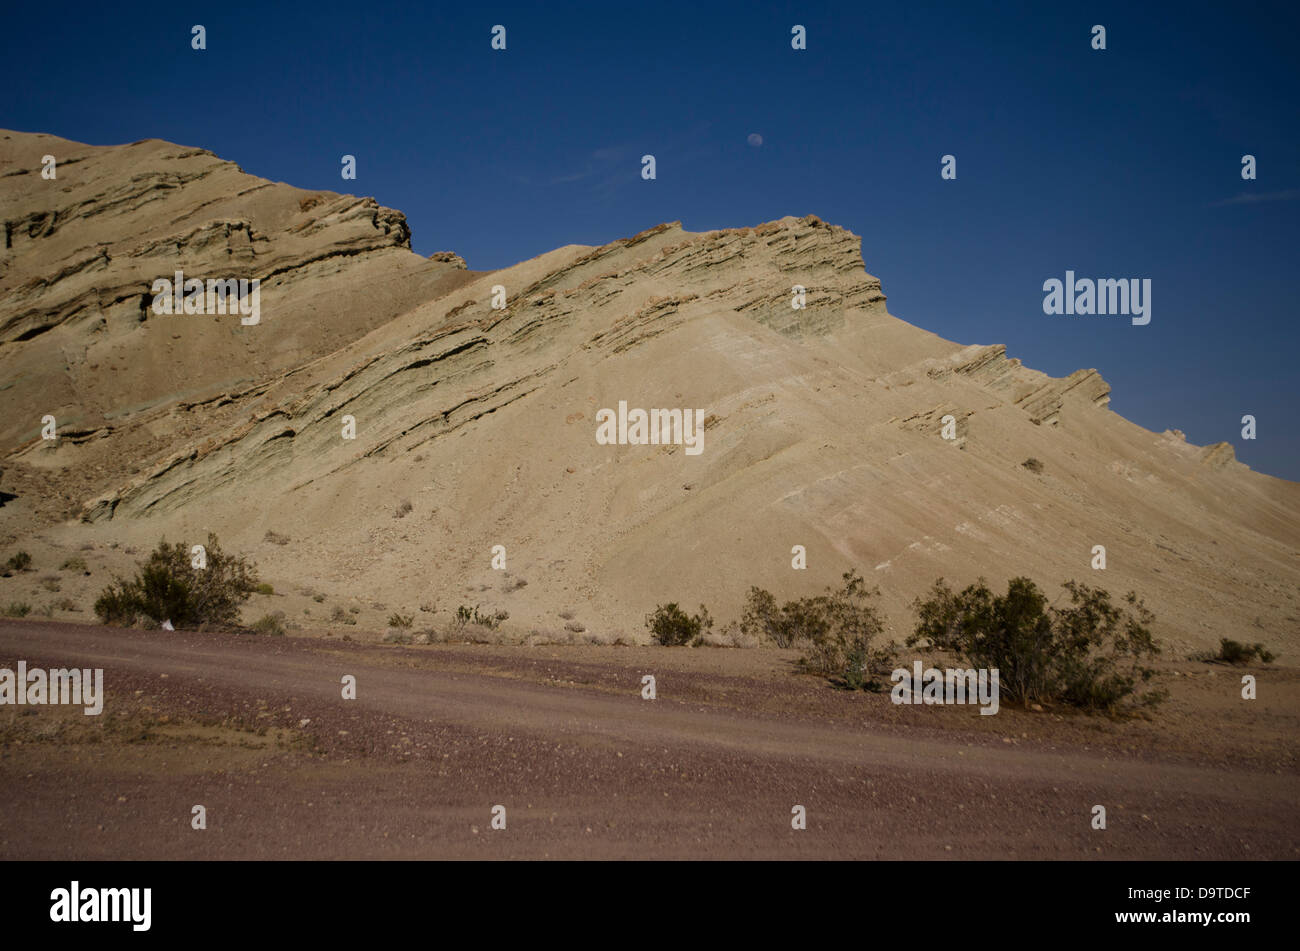 desert formation Stock Photo